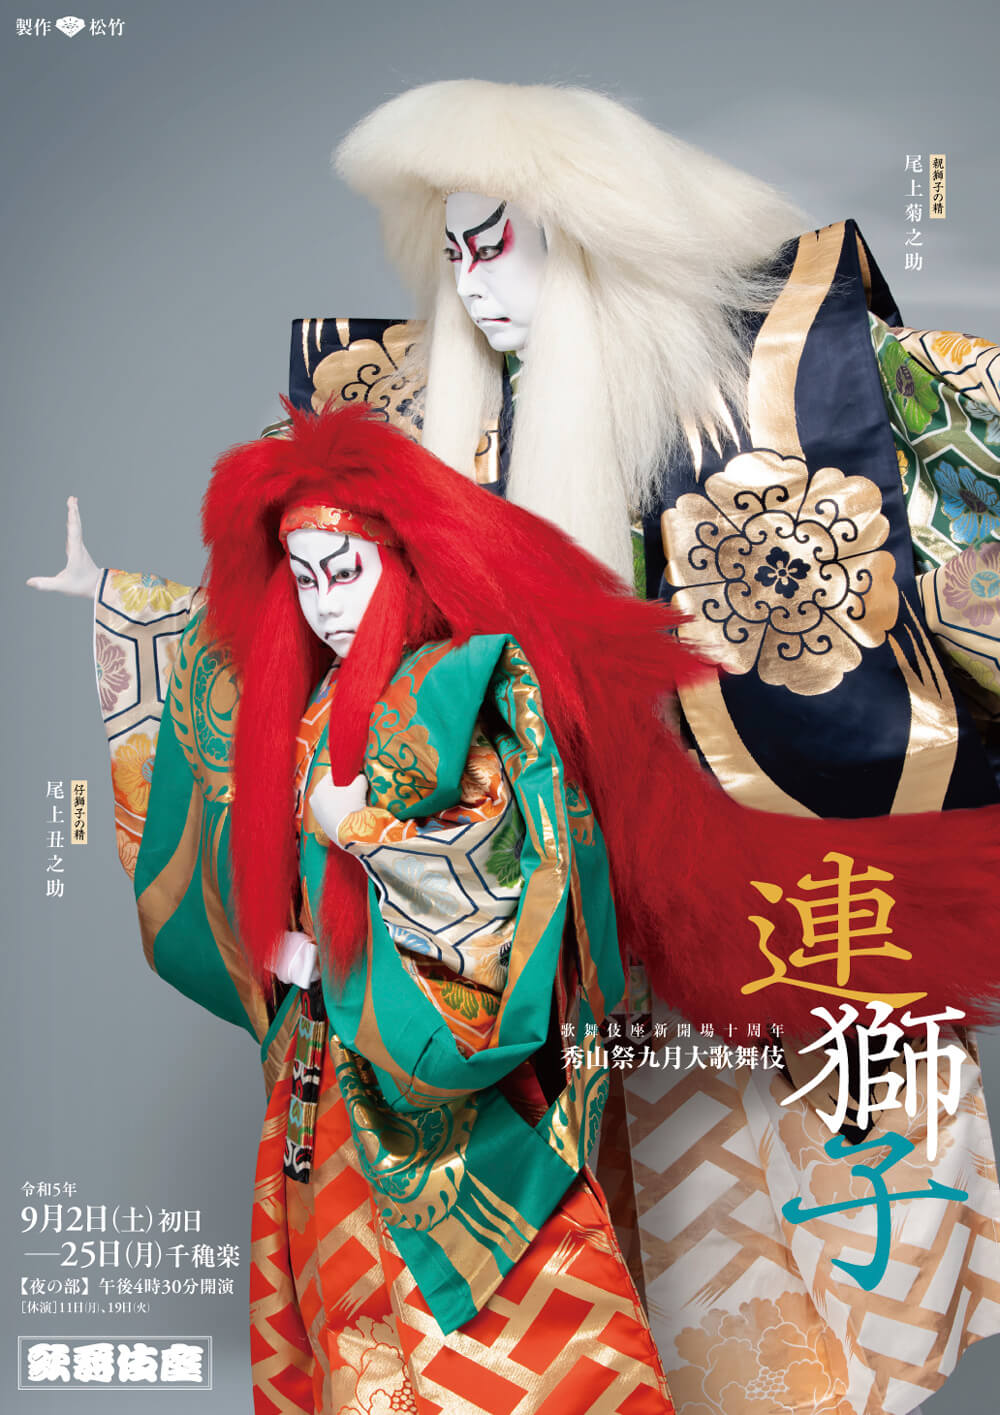 歌舞伎座『連獅子』特別ポスター公開